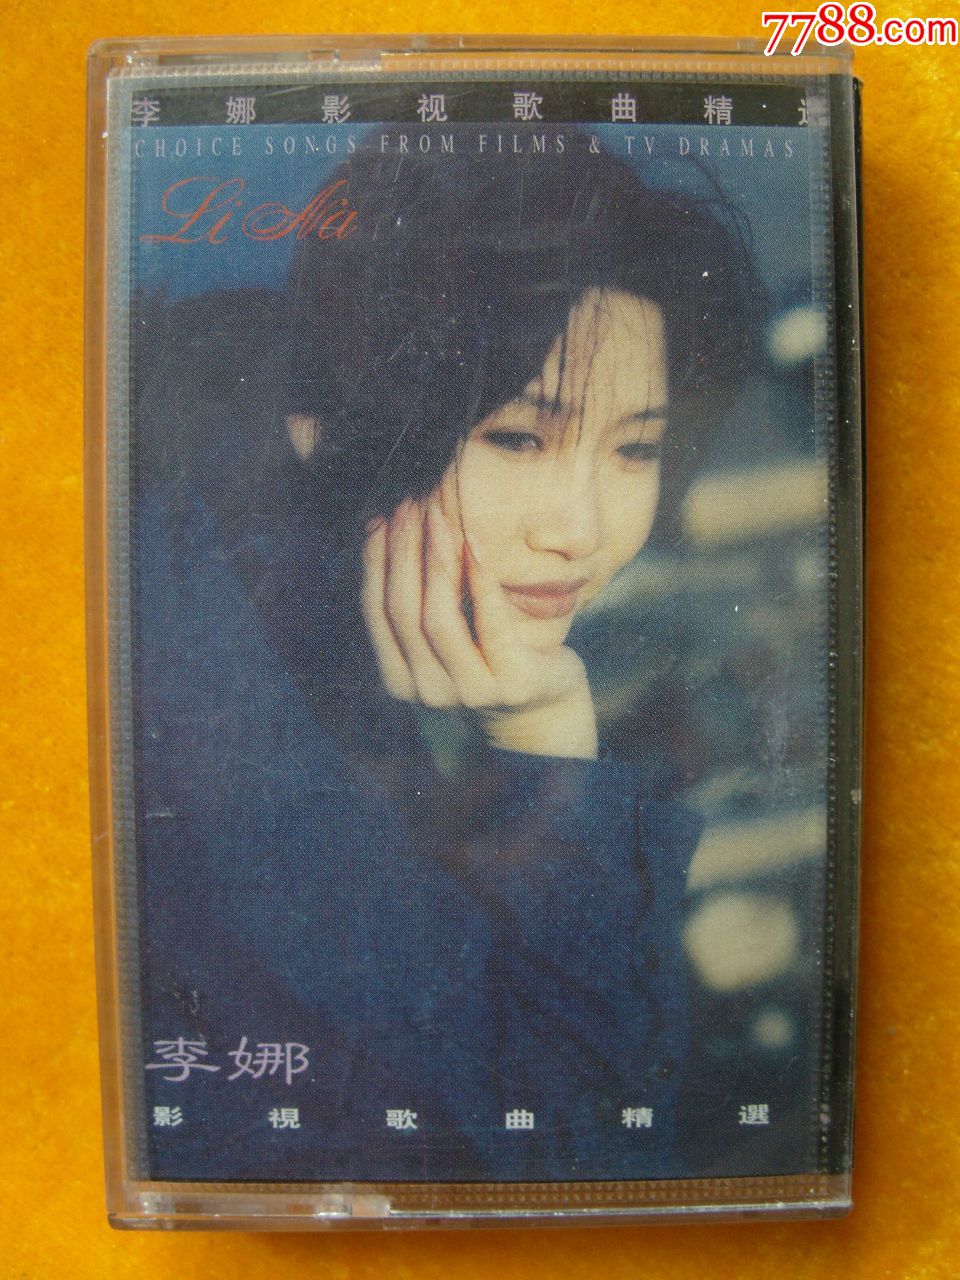 李娜歌手专辑图片